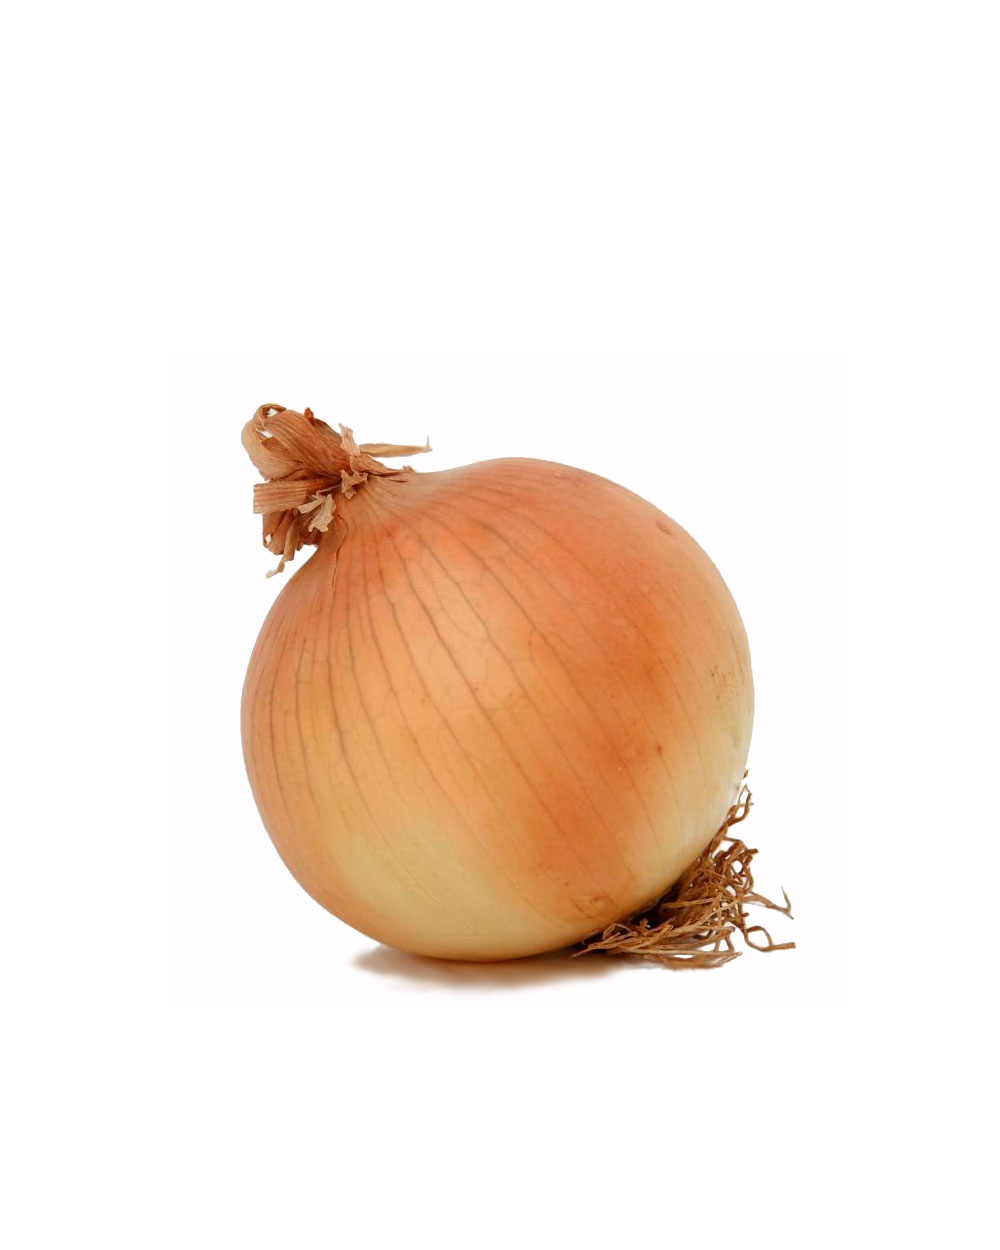 How many onions have we got. Лук на белом фоне.